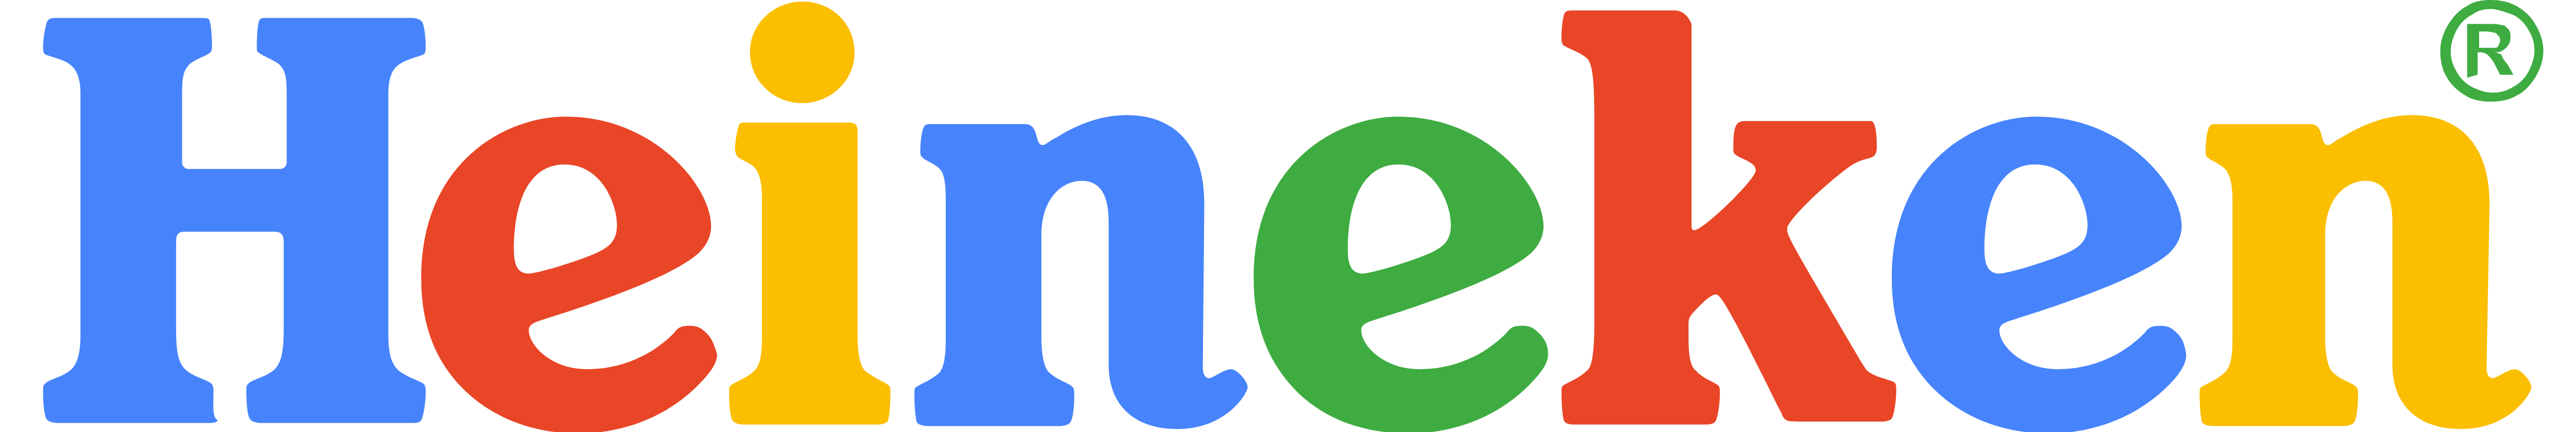 Google Heineken Heiniken Vector Graphics Logo Font PNG Image